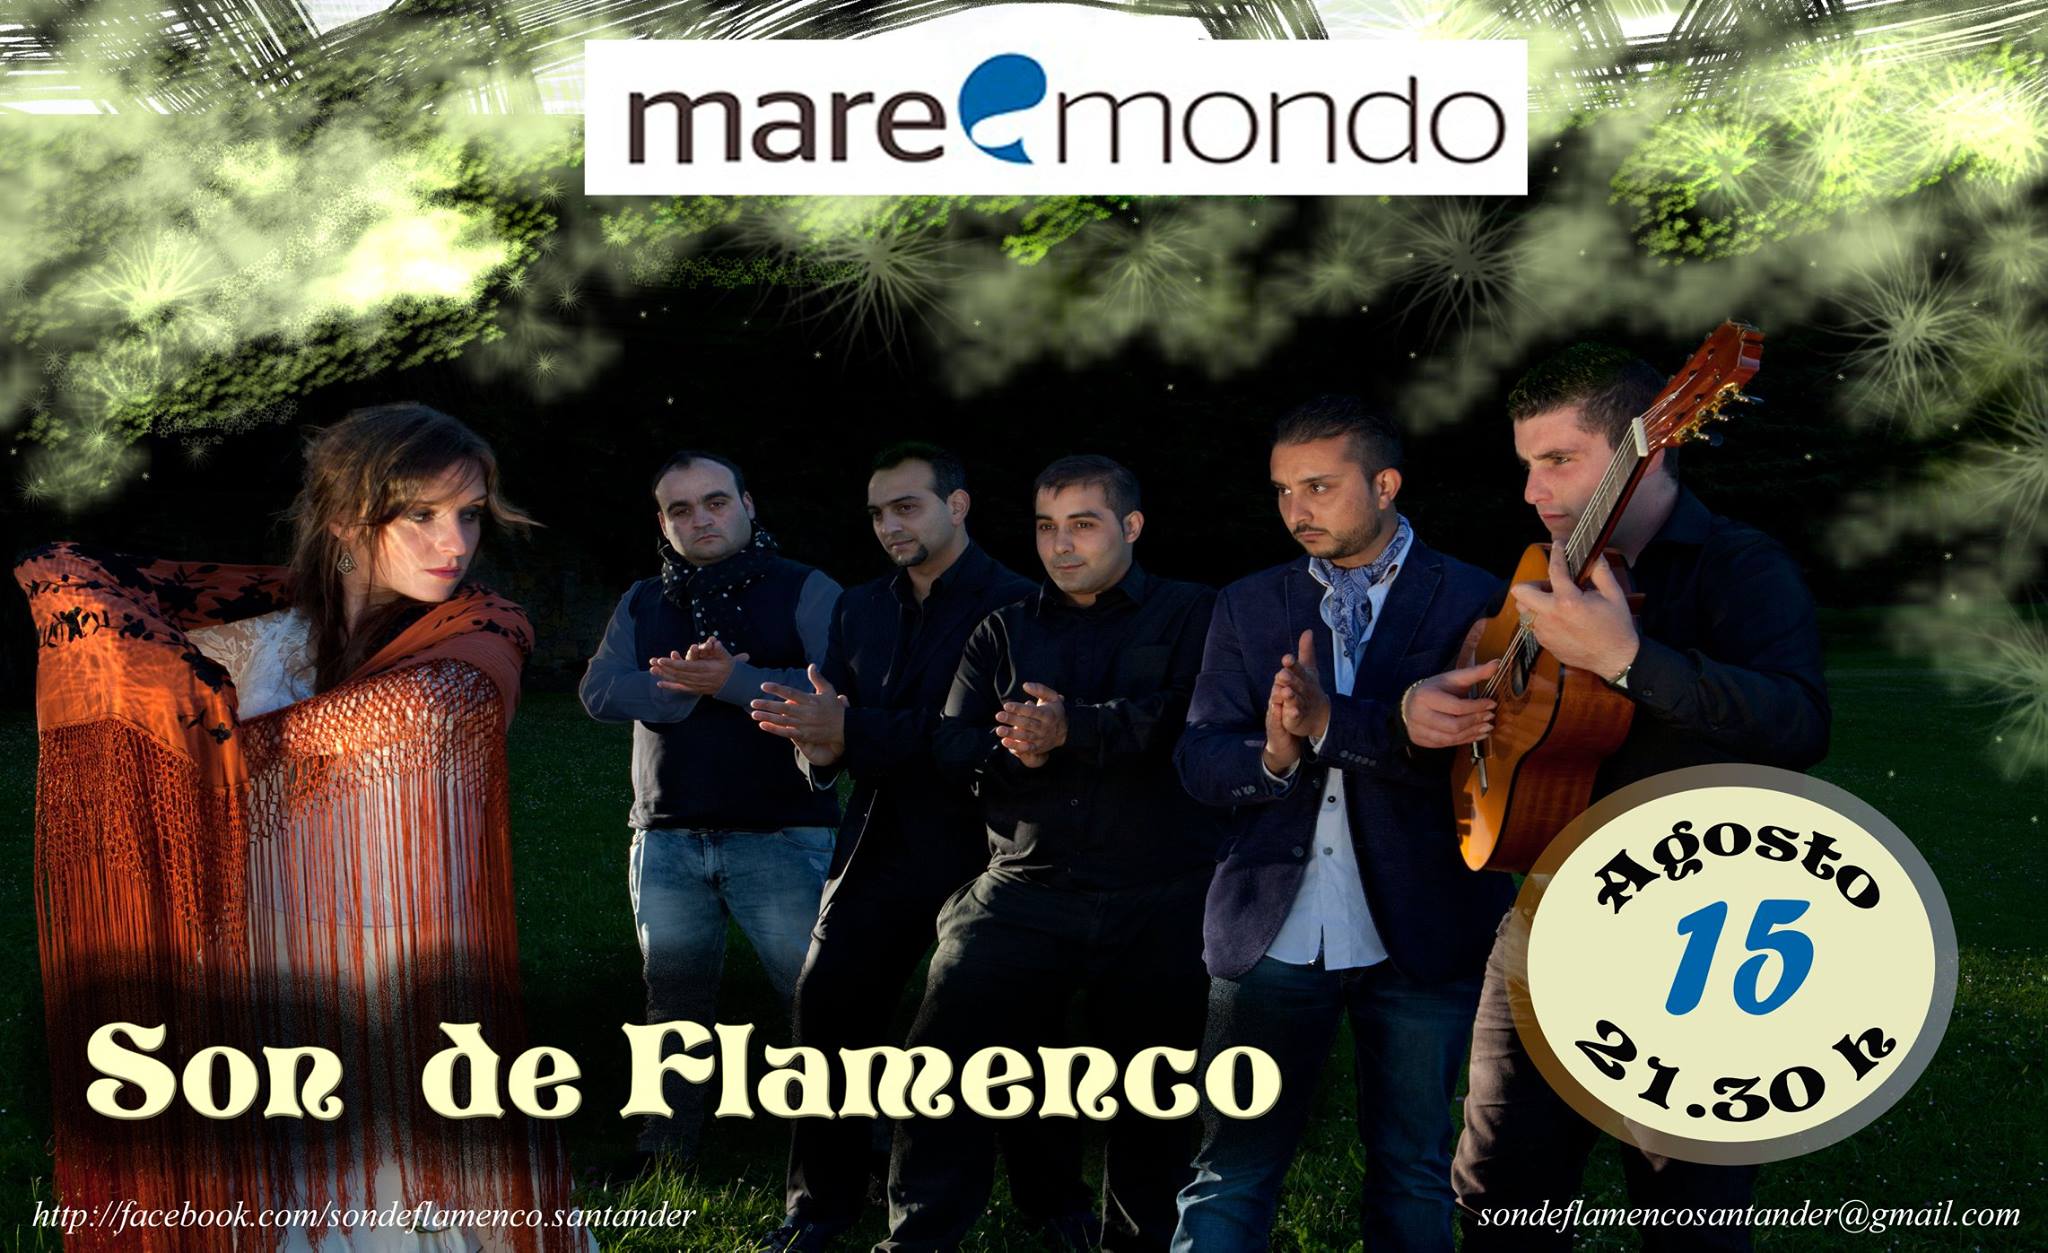 Son de Flamenco de concierto en el Maremondo